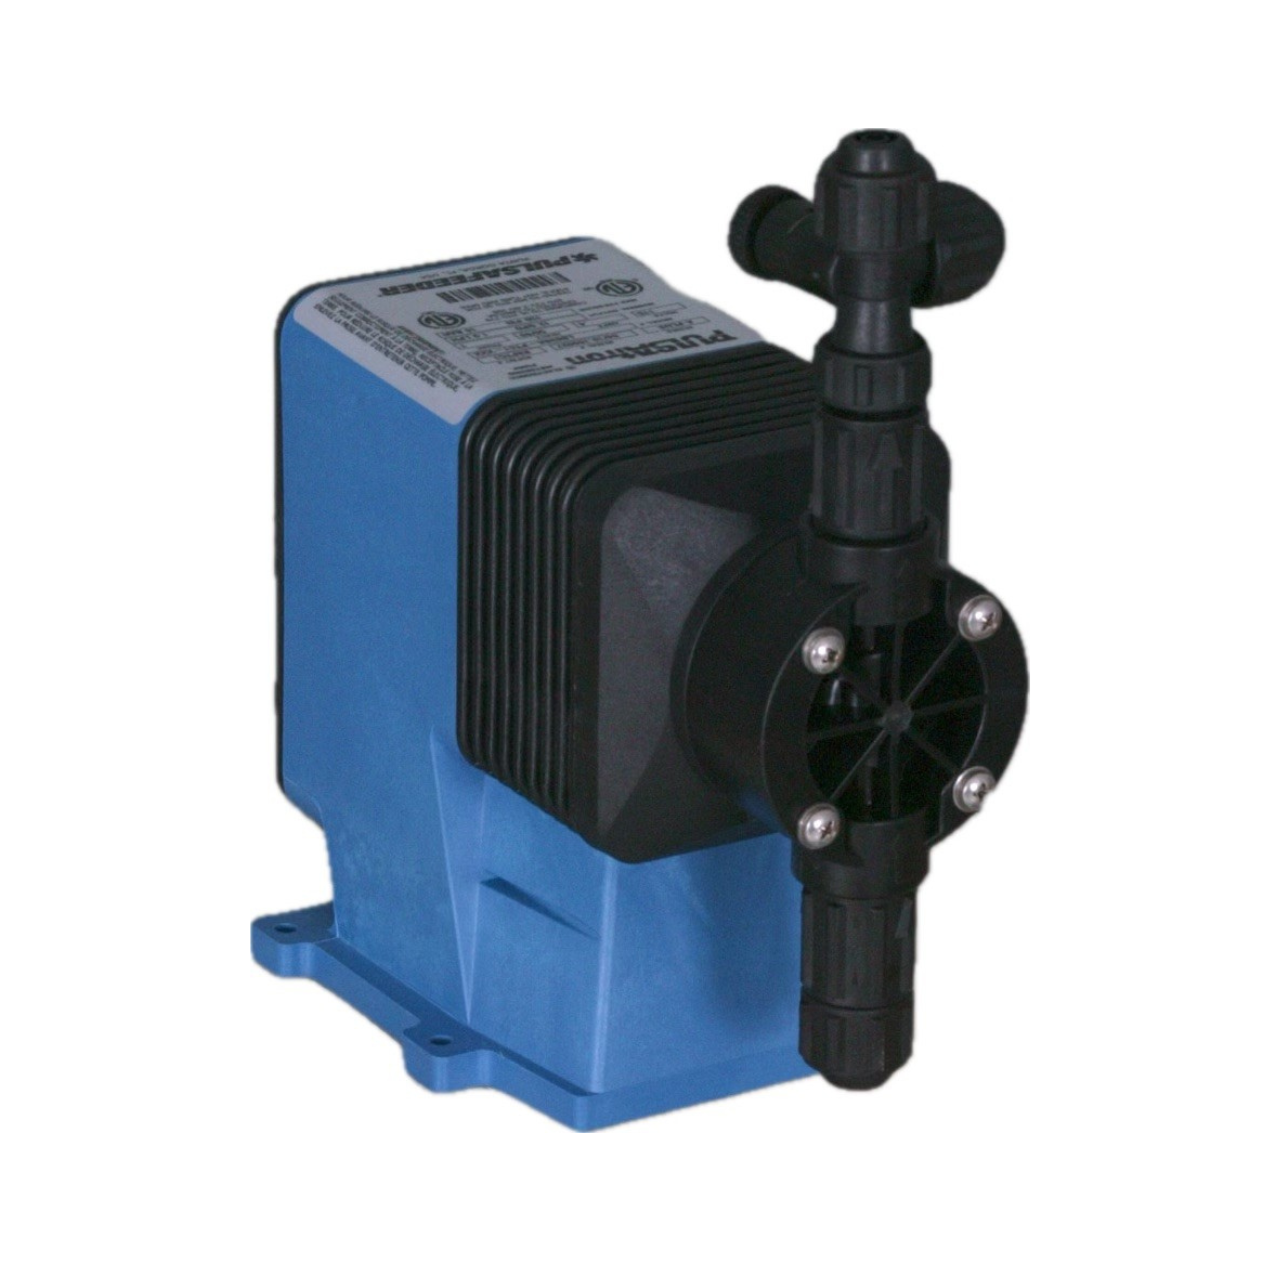 PULSAtron Series A+ Model LB02SA-KTC1-130 Diaphragm Metering Pump